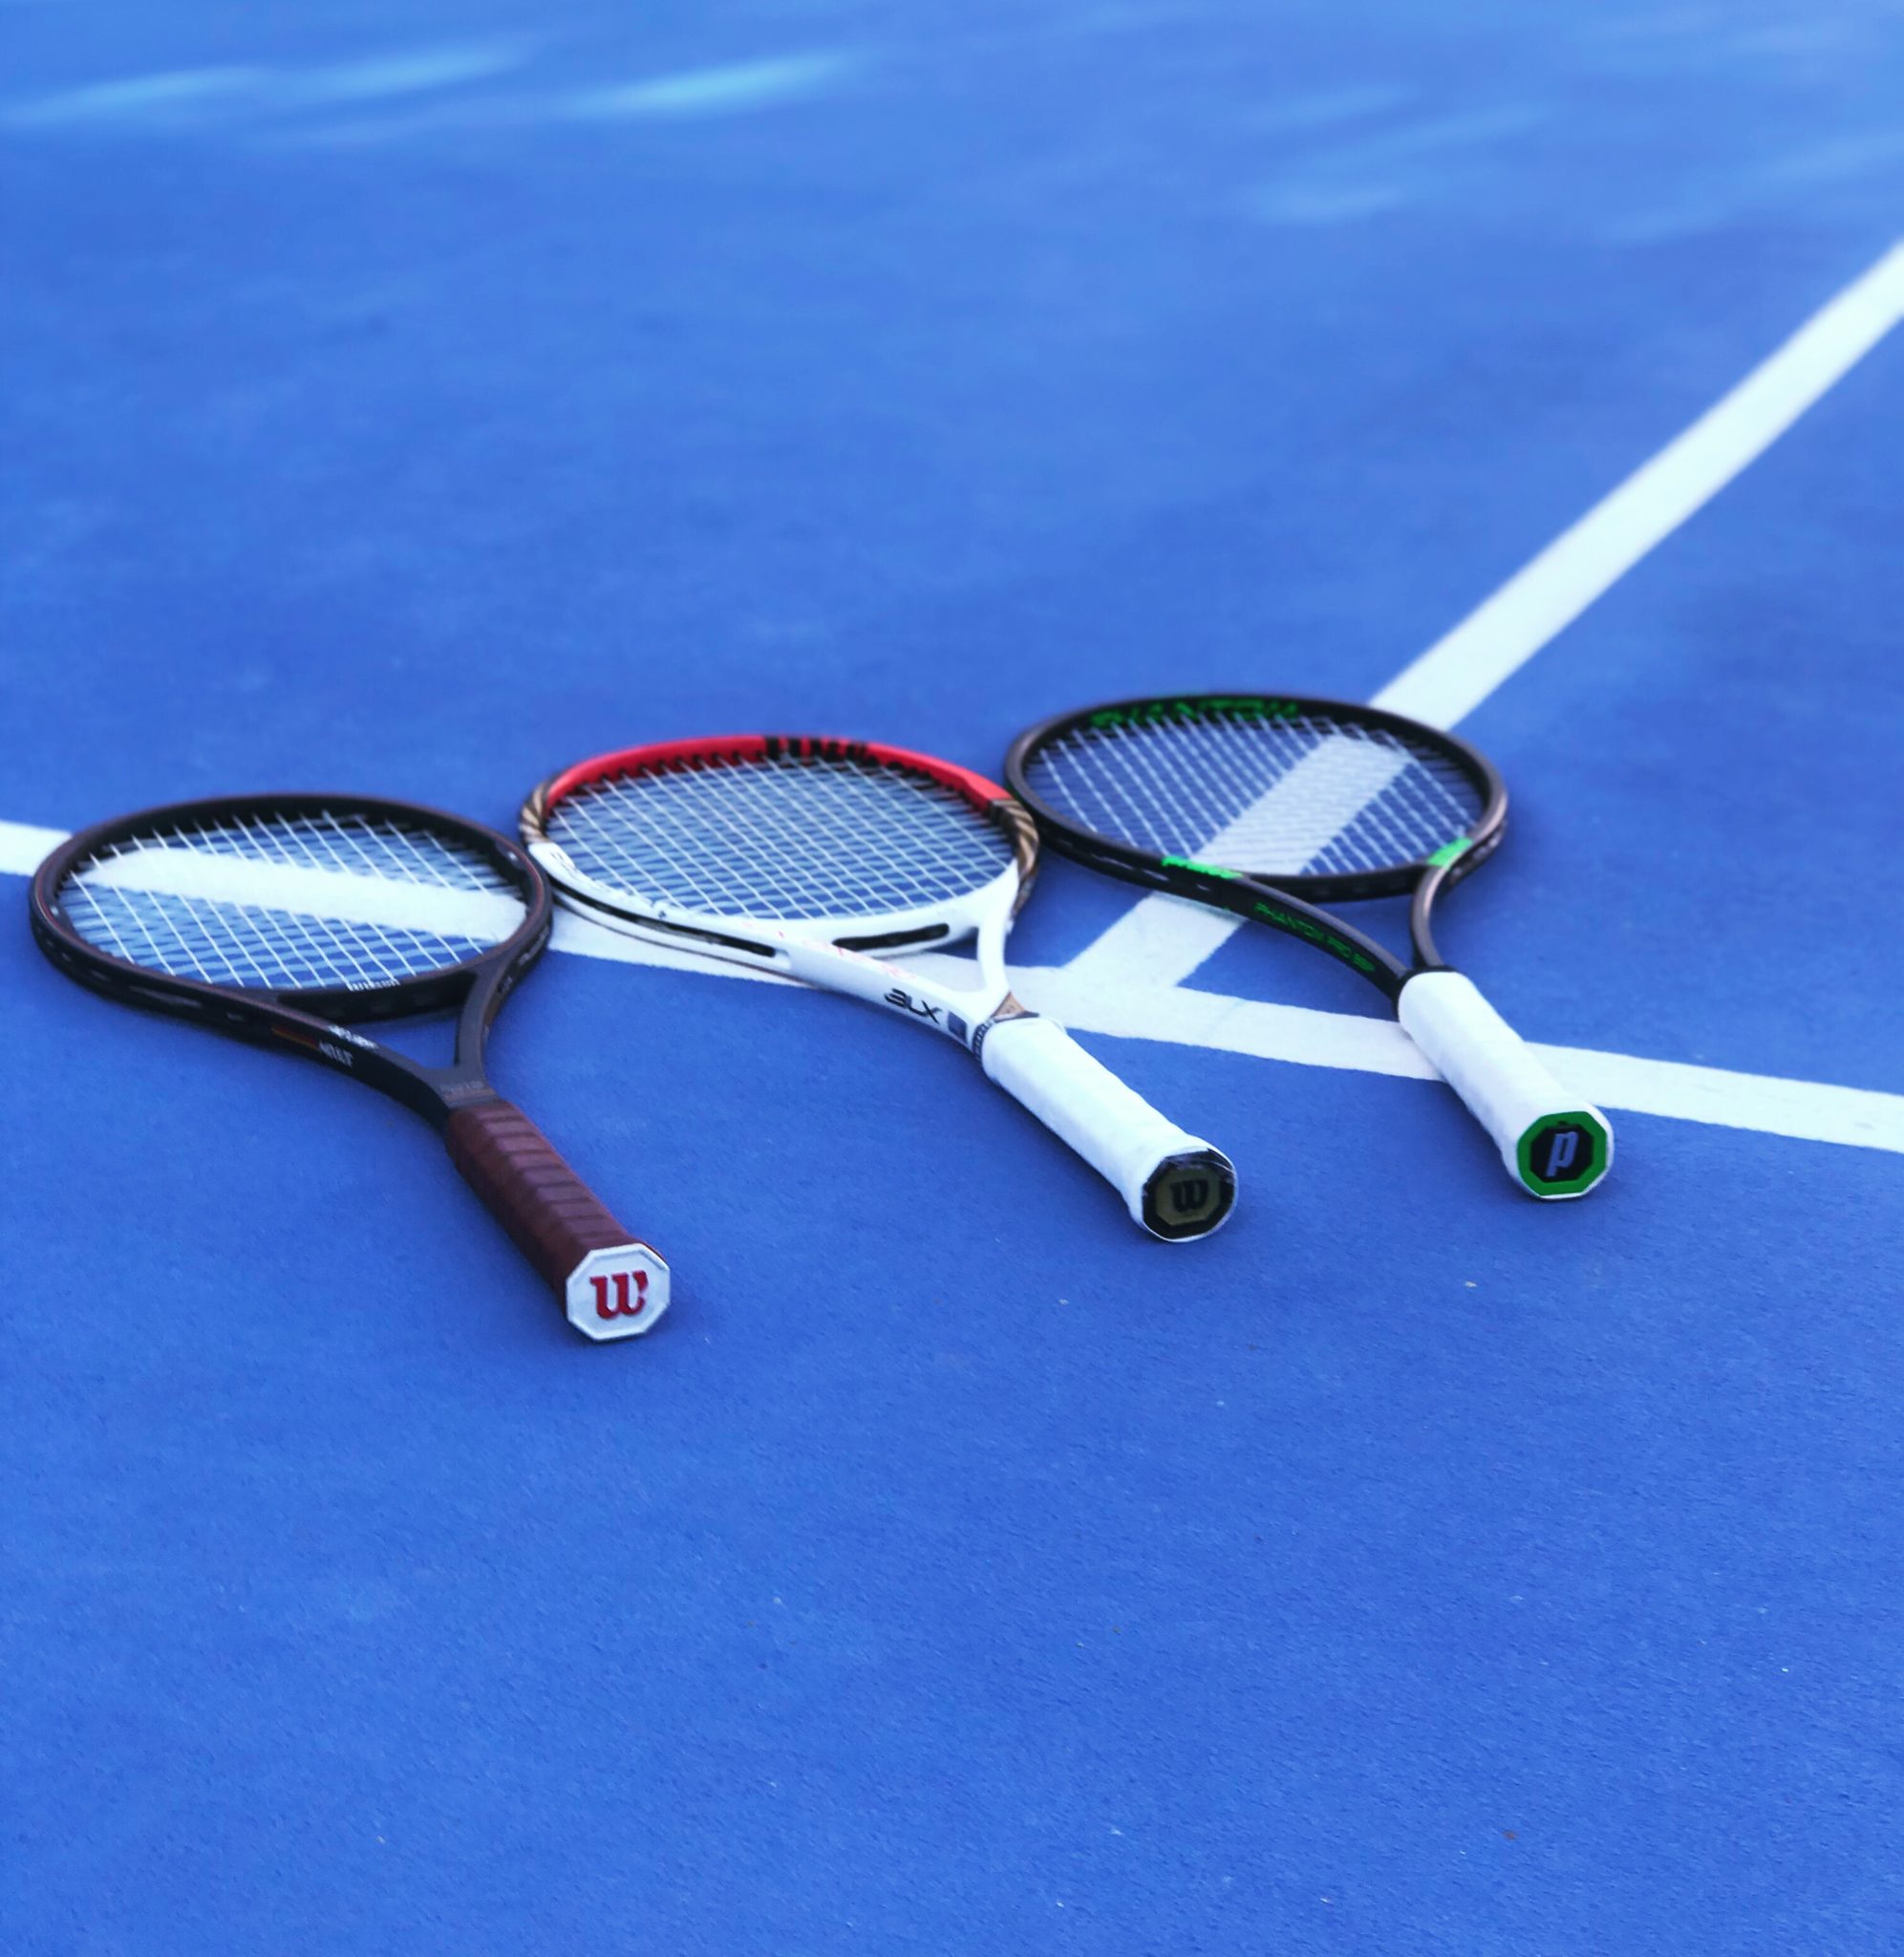 voelen Rijd weg Microbe Best Tennis Racquets 2019 - Tennisnerd.net - Tennis Racquet Advice